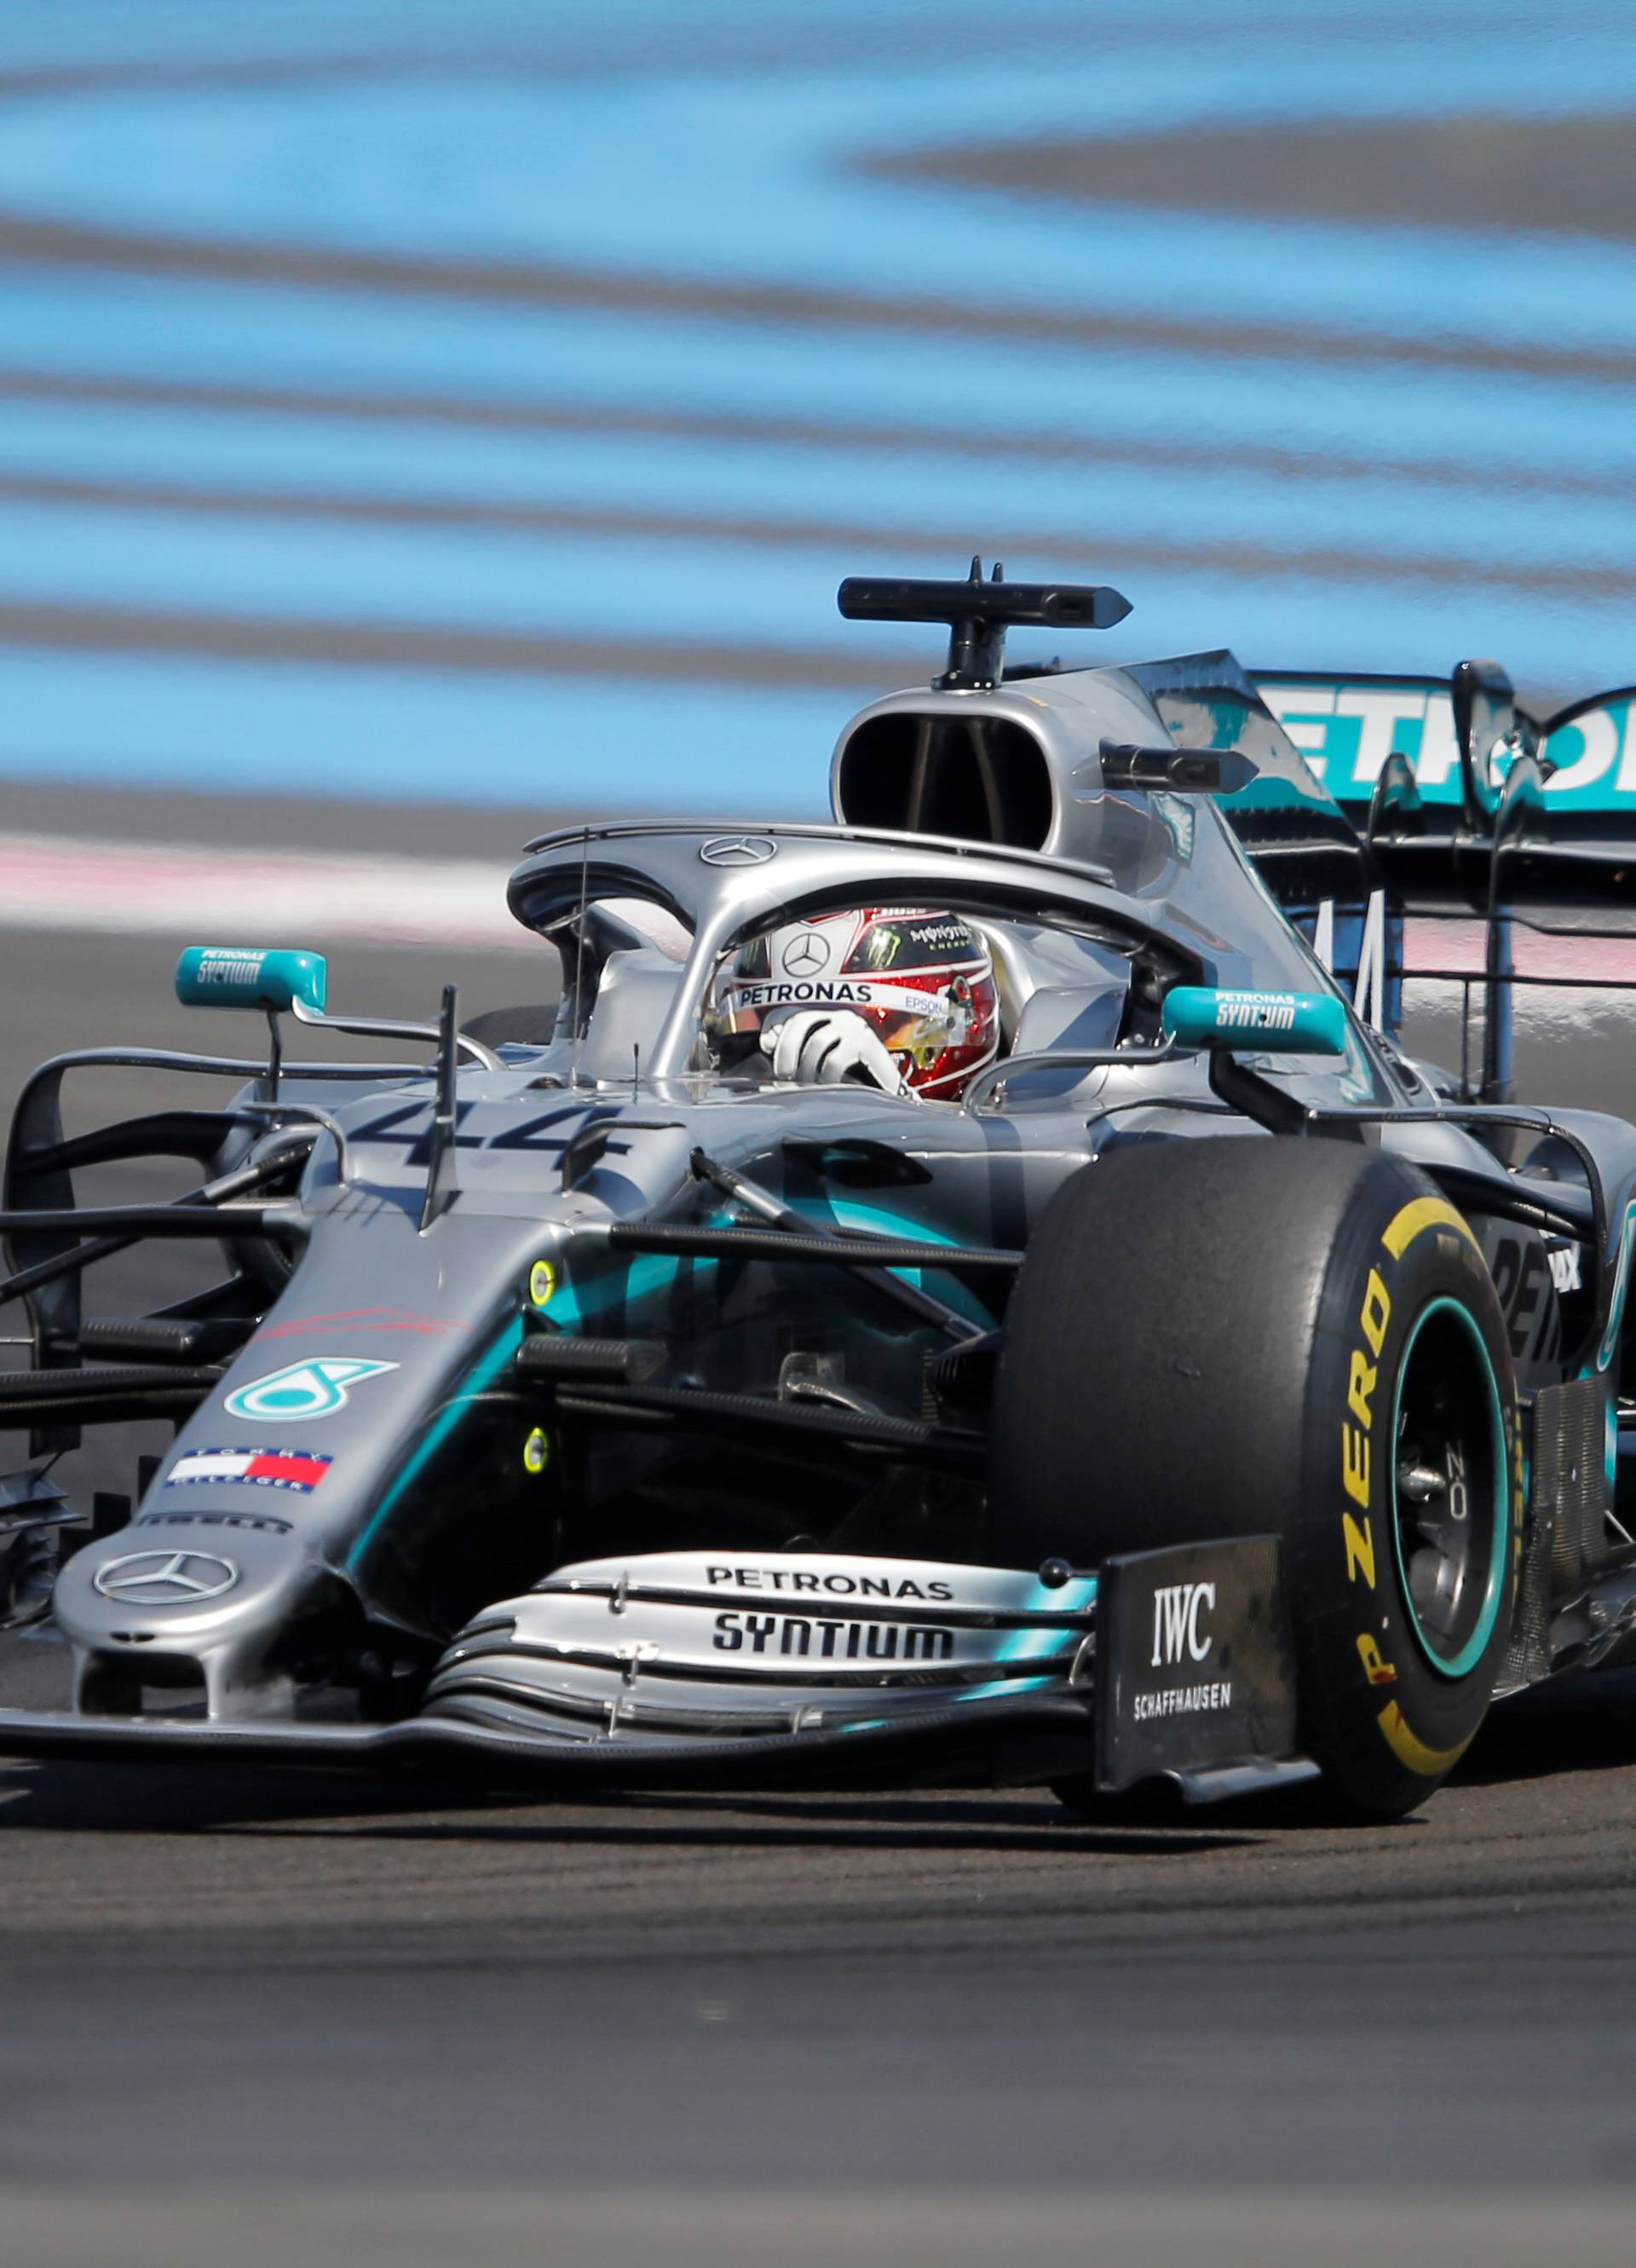 Formula 1: Hamilton nezadrživ, Mercedes najbolji u Francuskoj